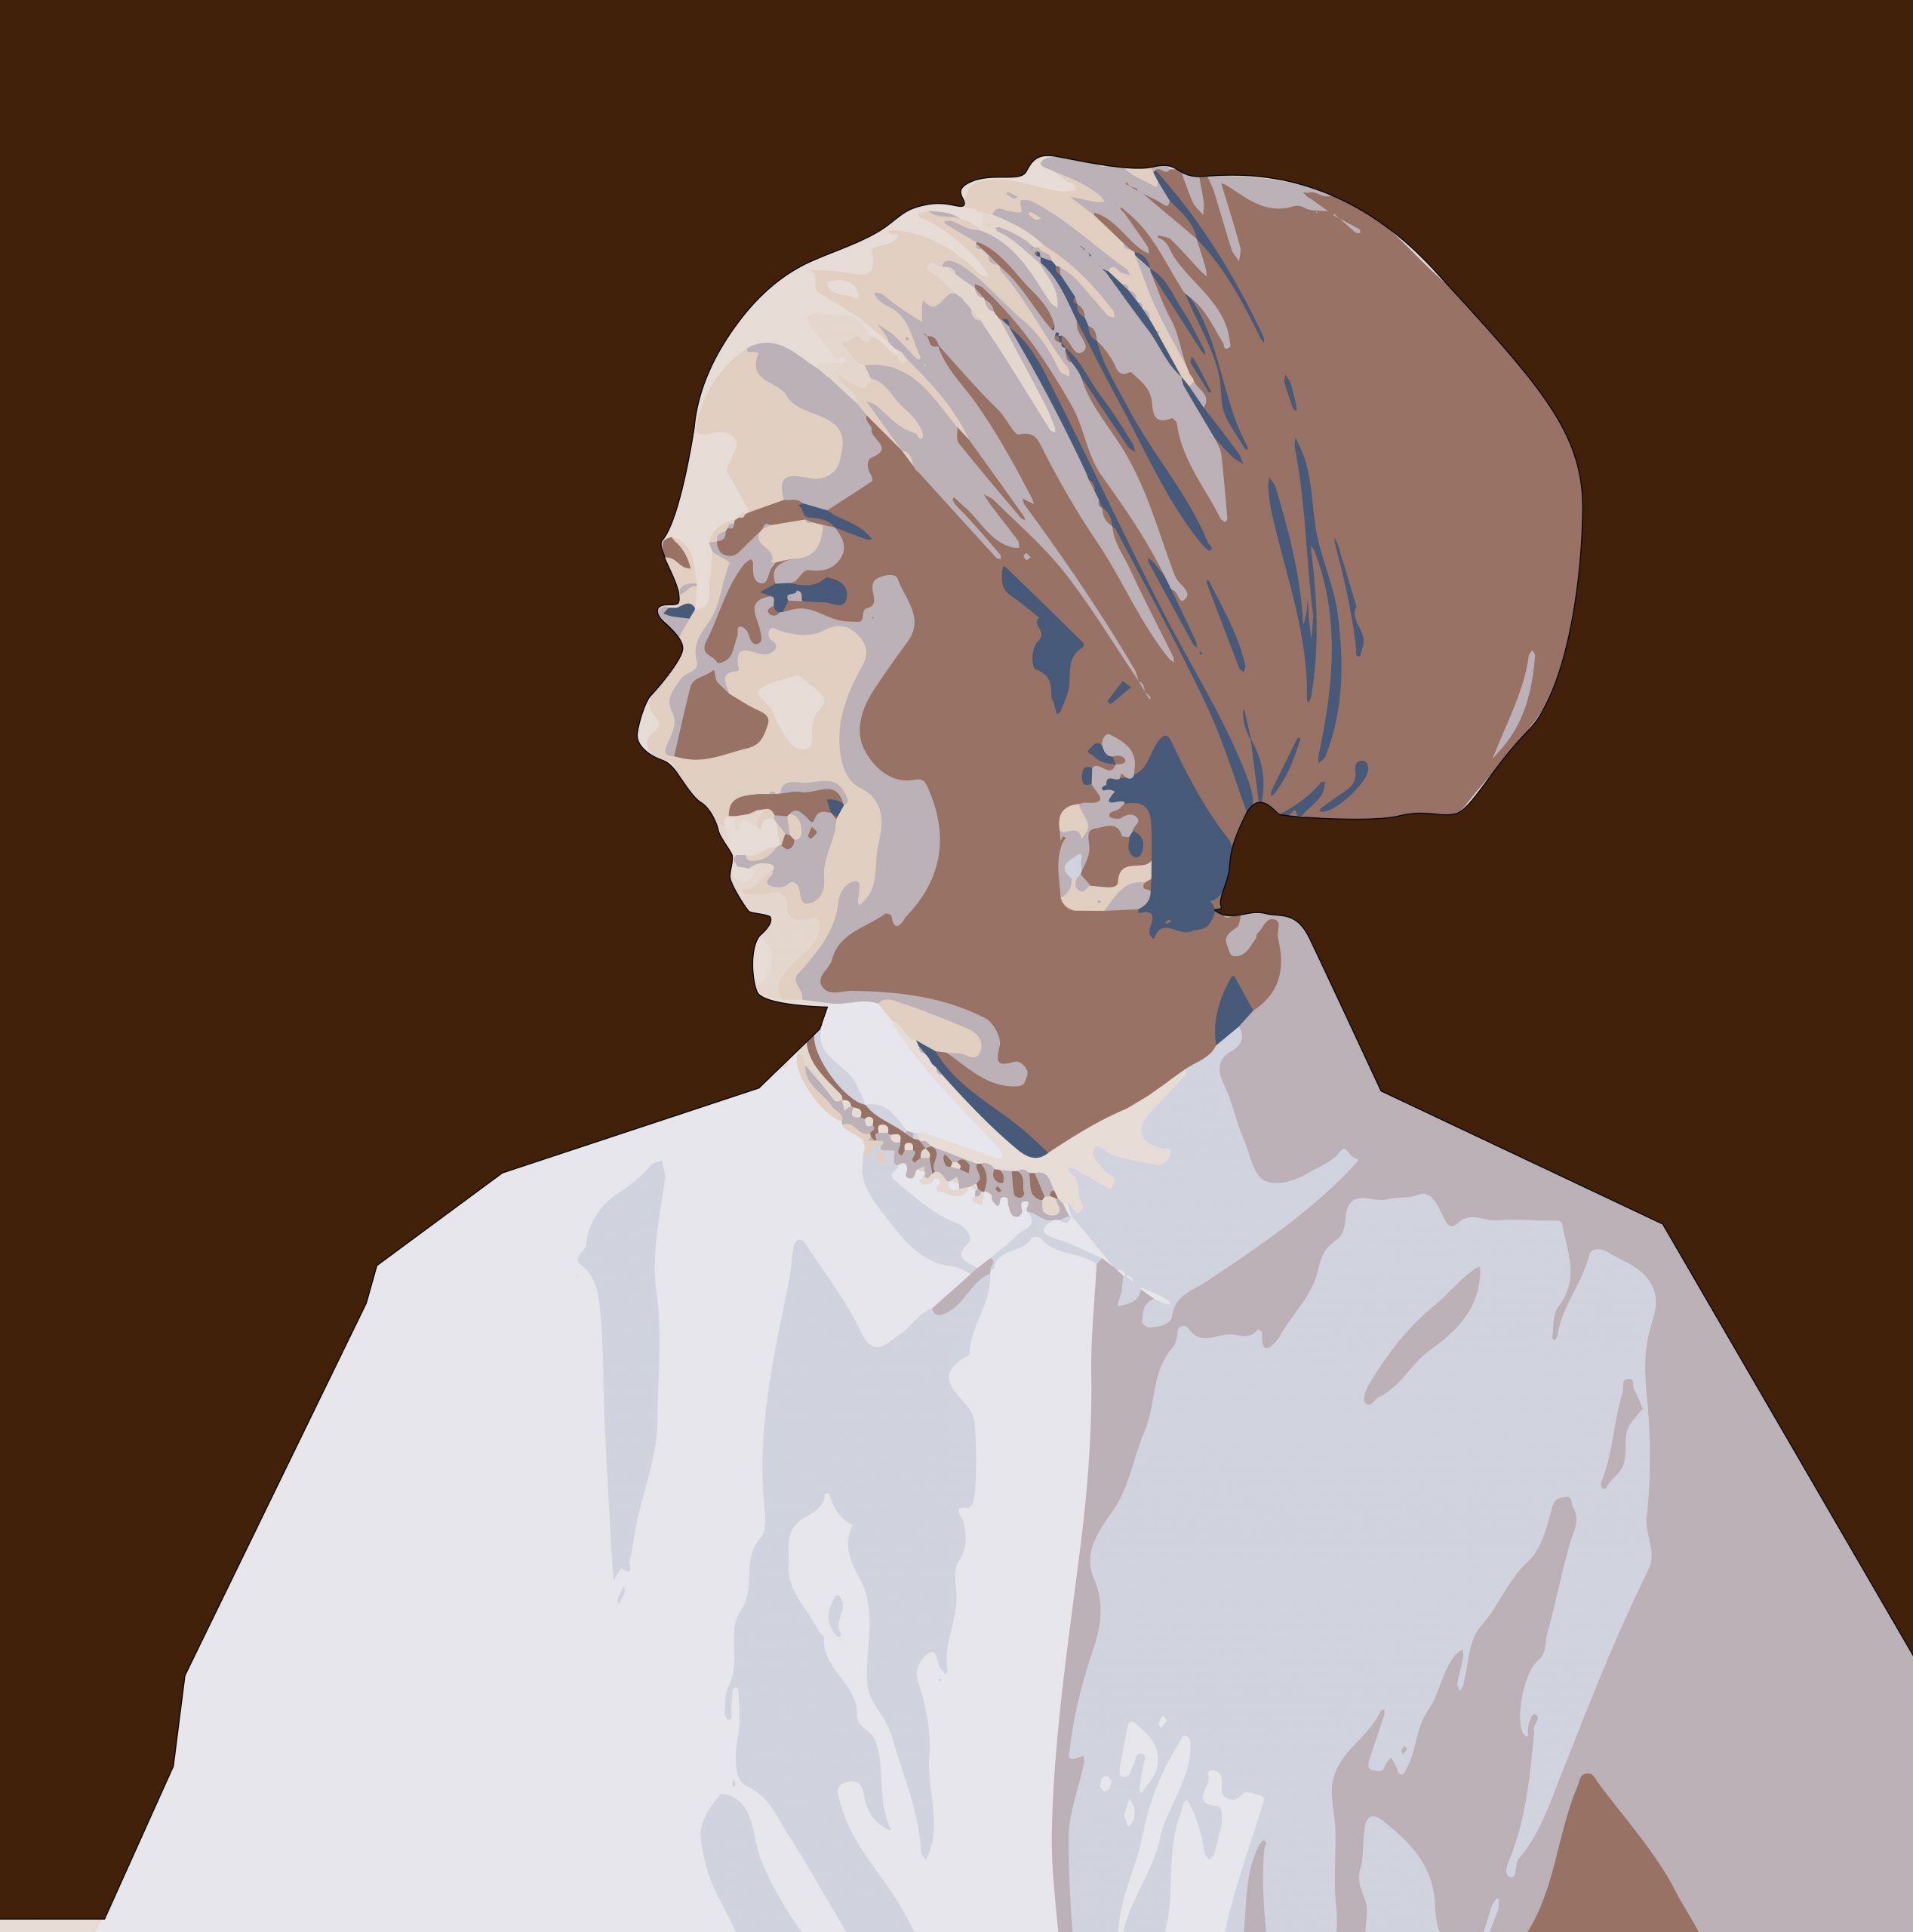 Portrait illustration of a woman